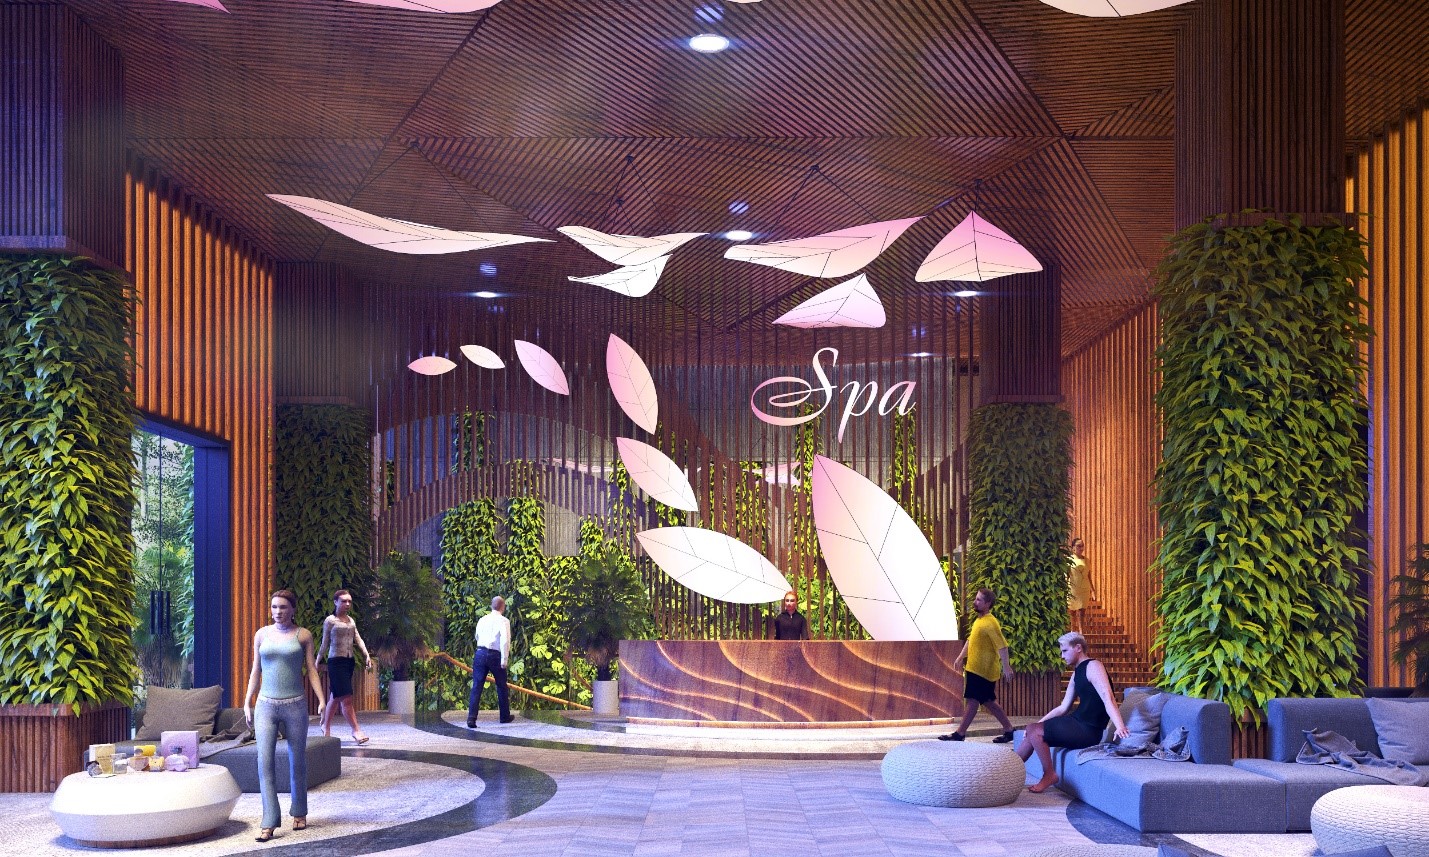 Đáp ứng được nhu cầu về sản phẩm chăm sóc sức khoẻ và sắc đẹp đẳng cấp cao, Seva Spa & Beauty Center đã được Flamingo Group xây dựng và đưa tới cộng đồng.